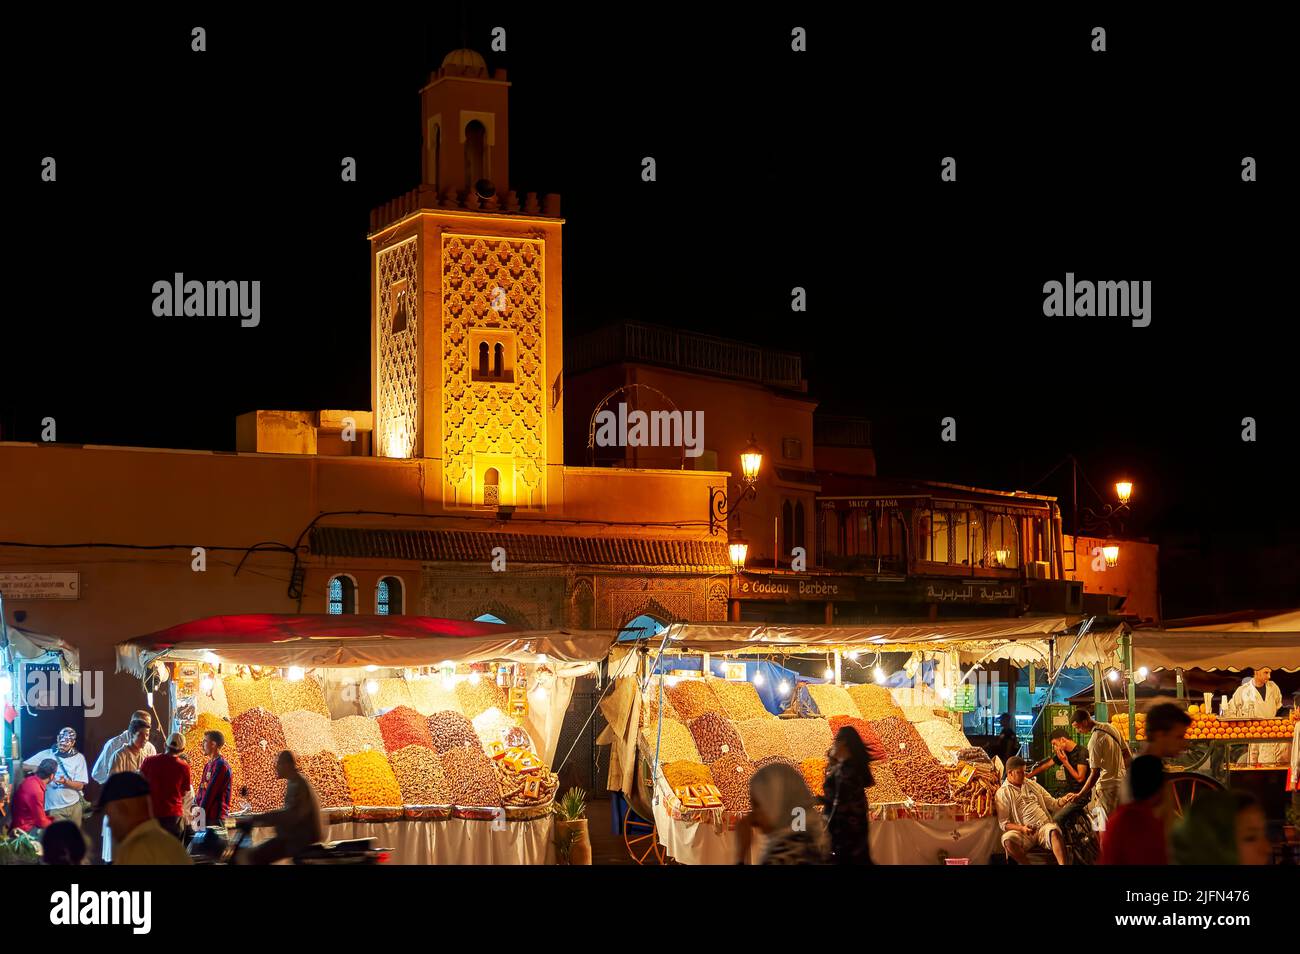 Maroc Marrakech. Le marché nocturne de la place Djema el Fna au coucher du soleil Banque D'Images